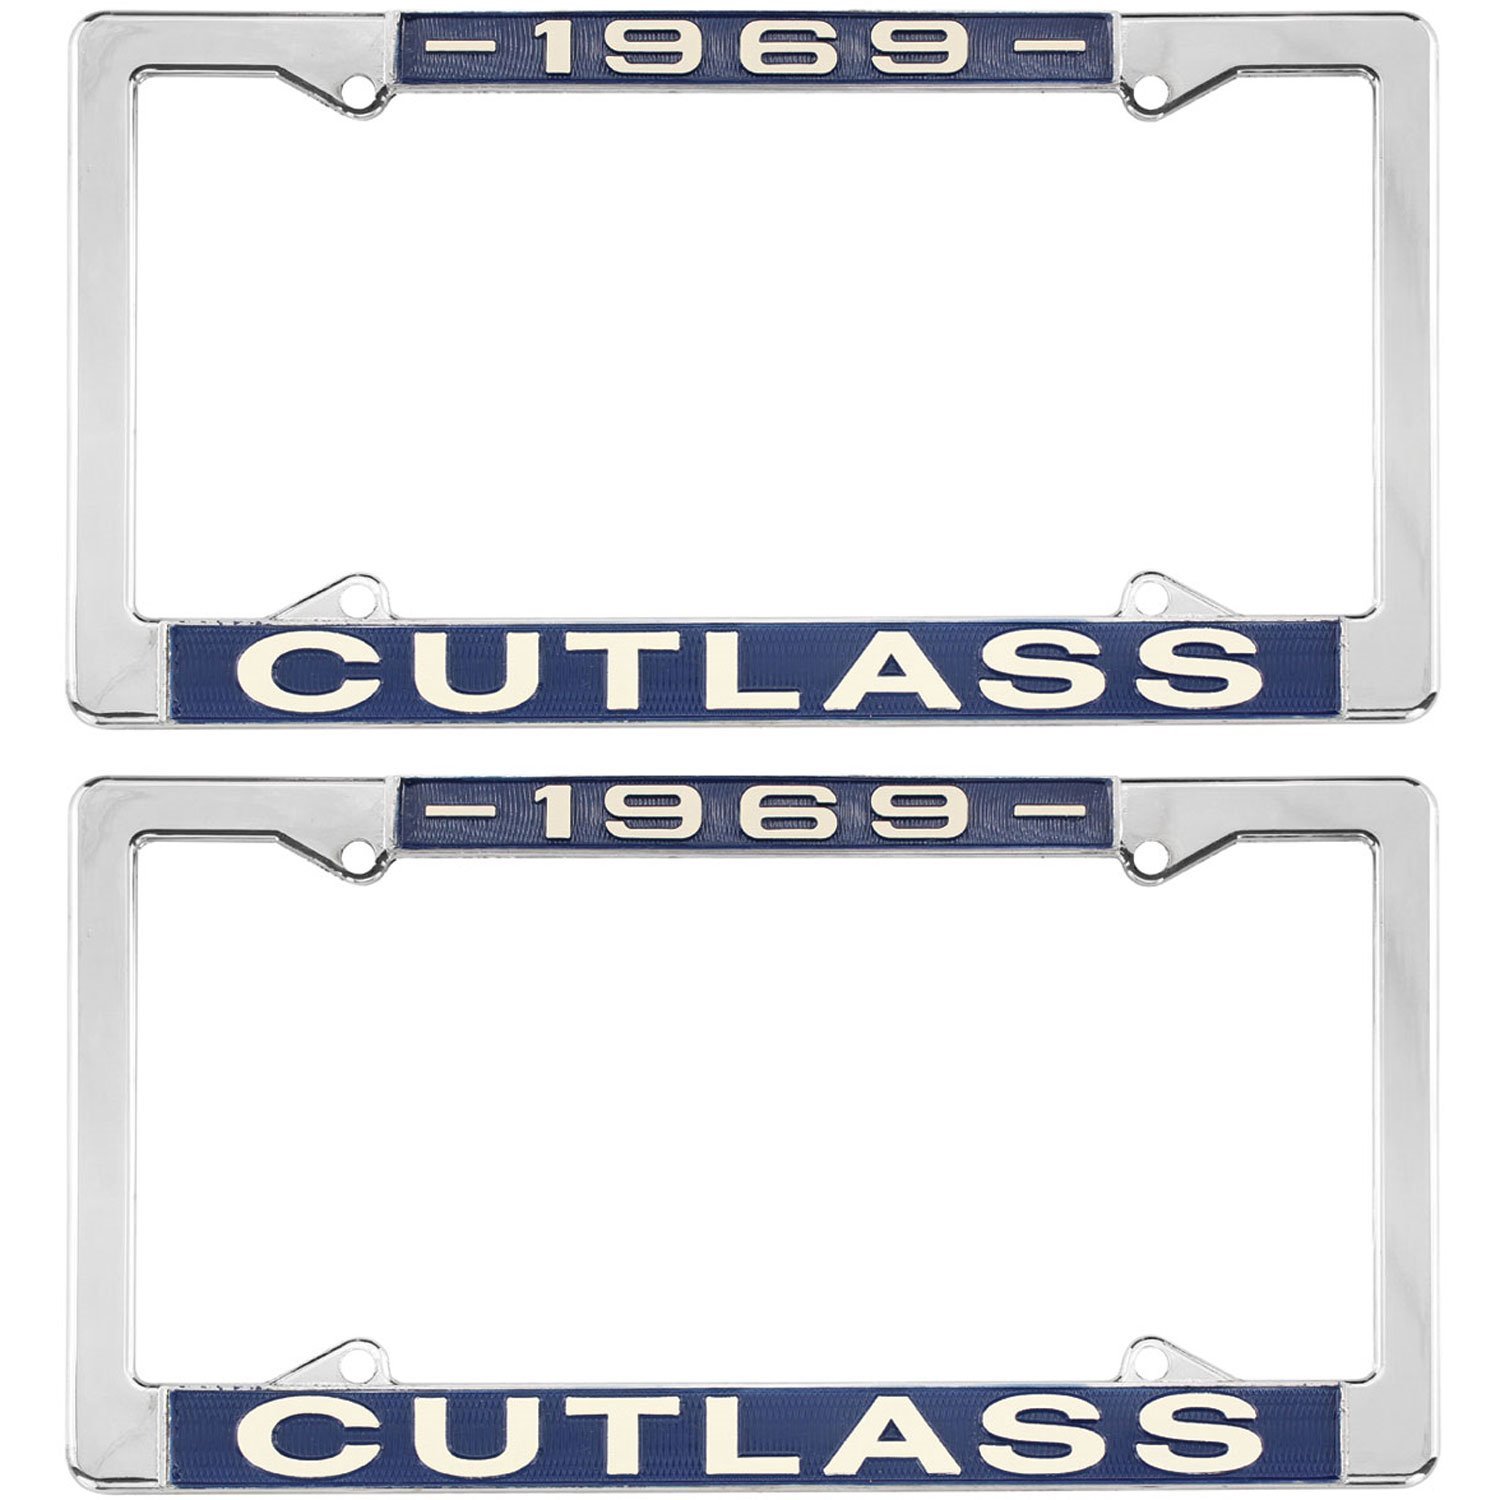 License Plate Frame 1969 Cutlass